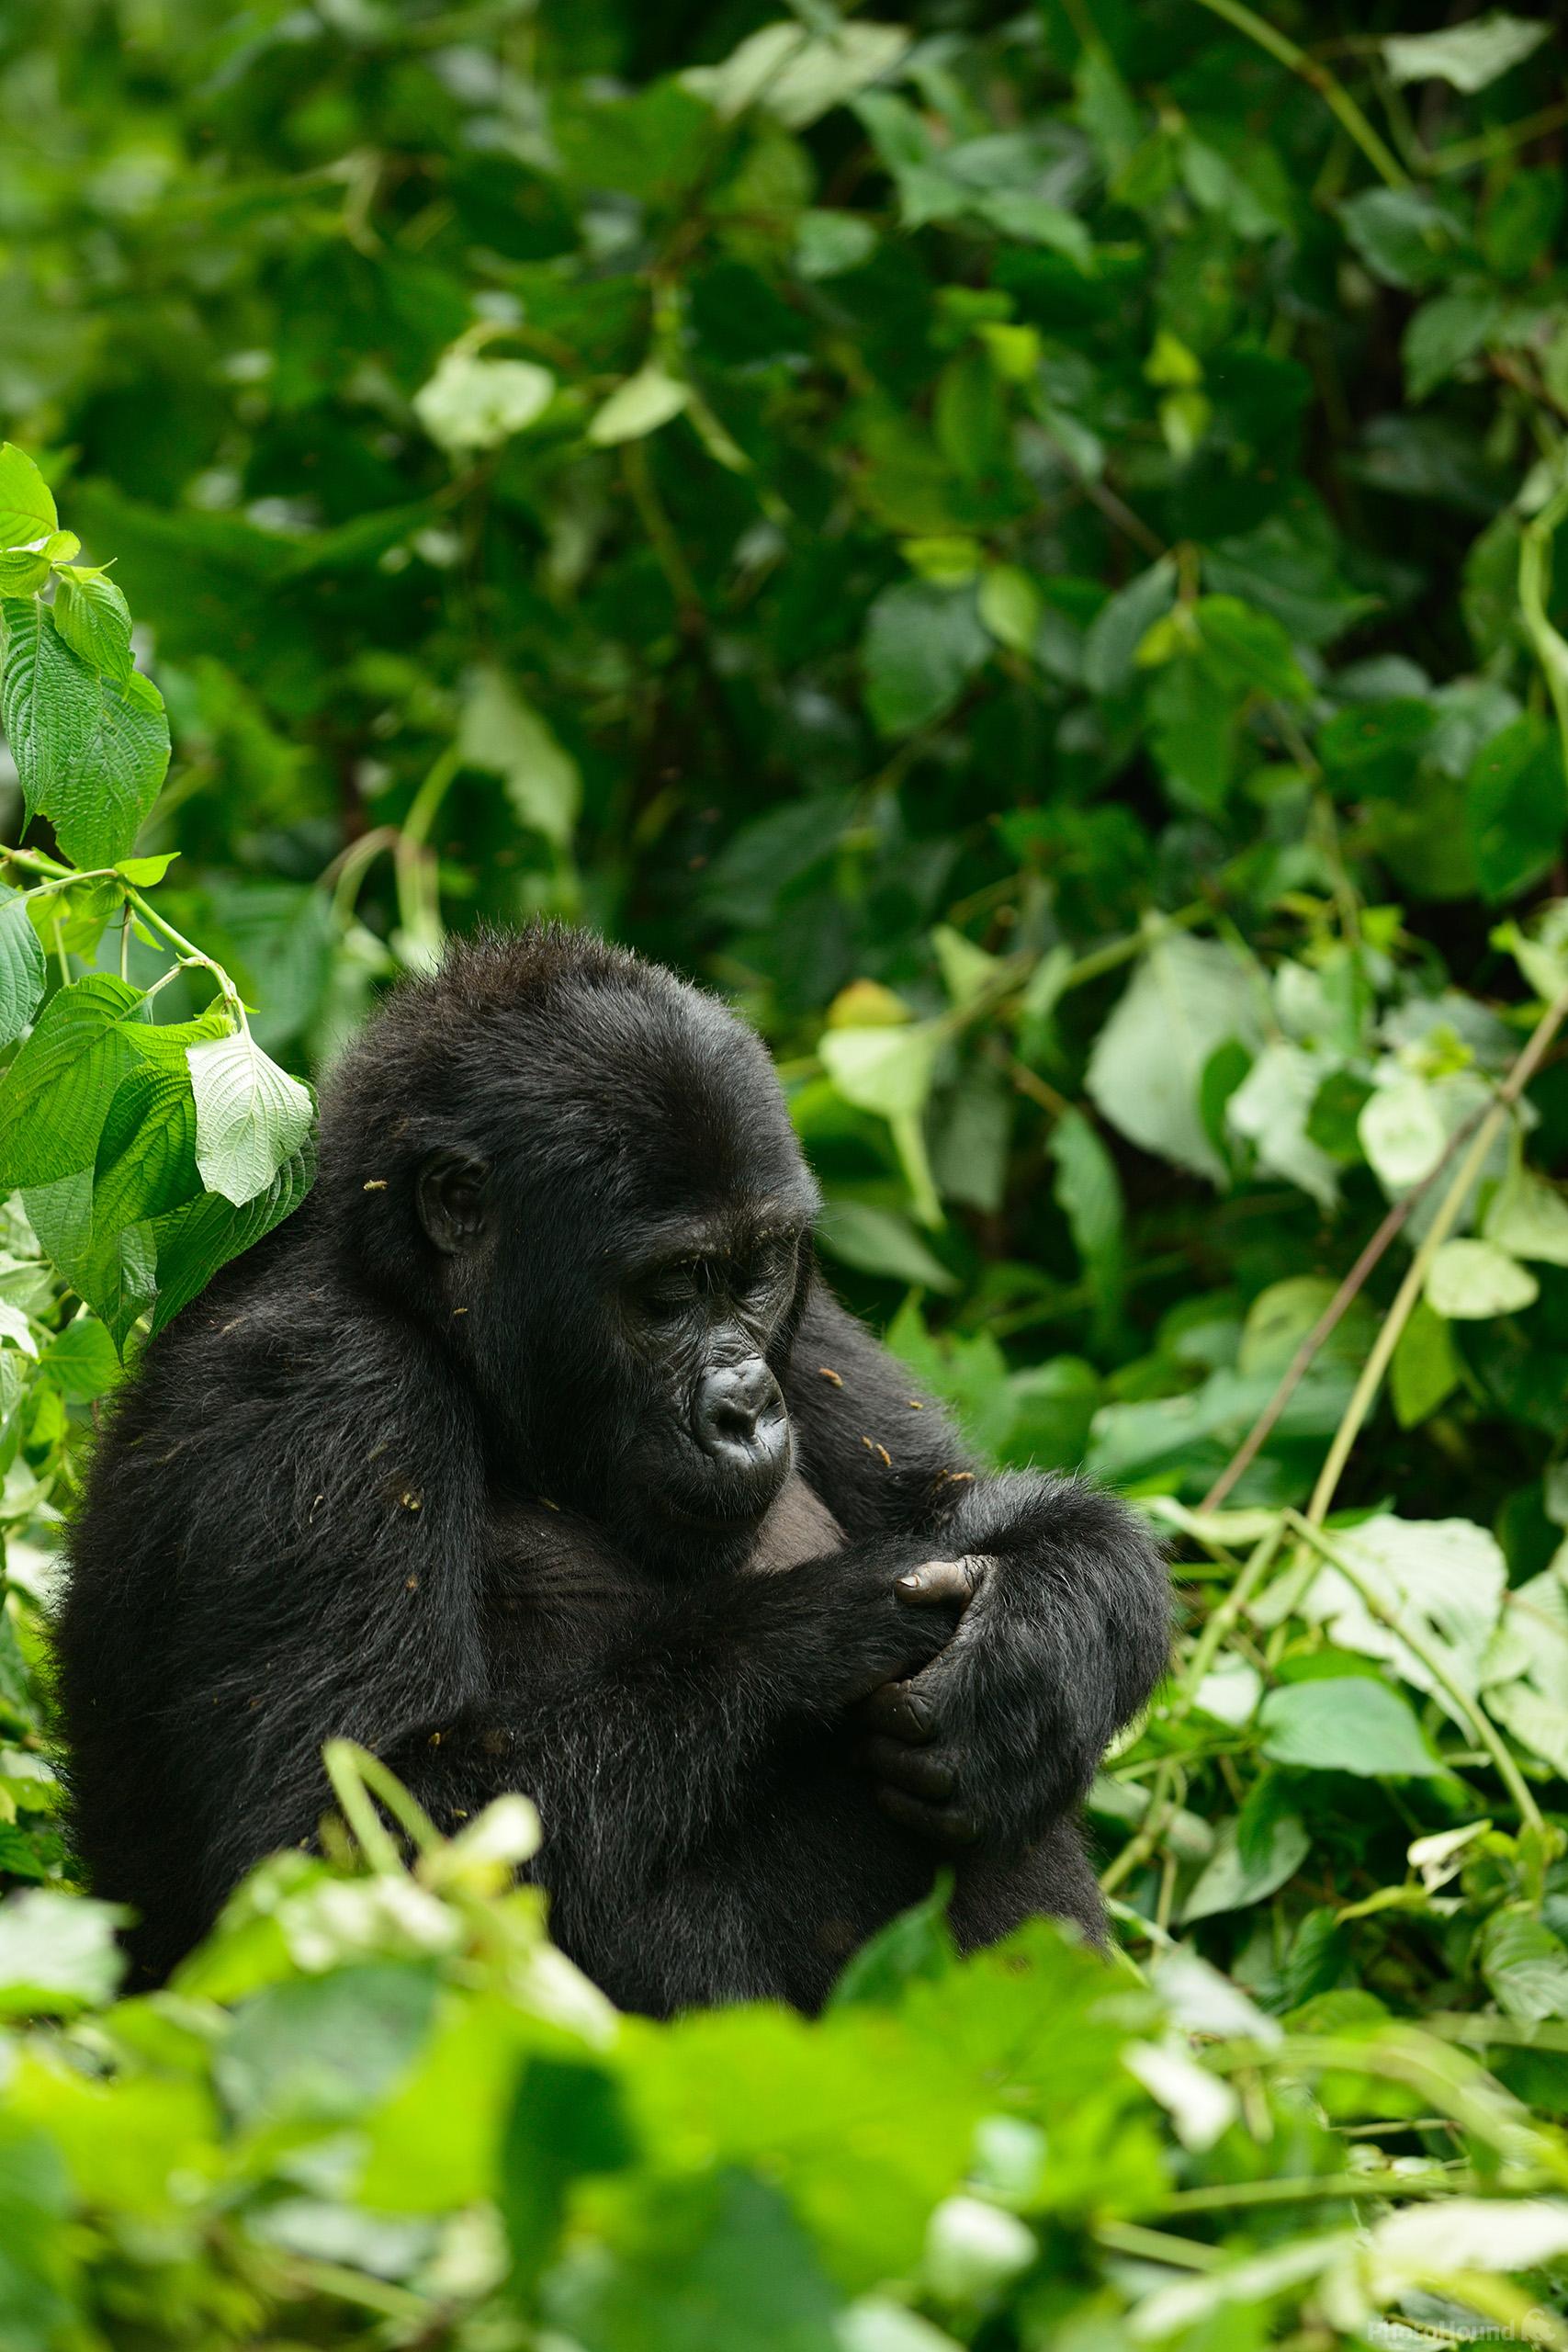 Image of Gorilla Trekking at Ruhija (Bwindi) by Luka Esenko